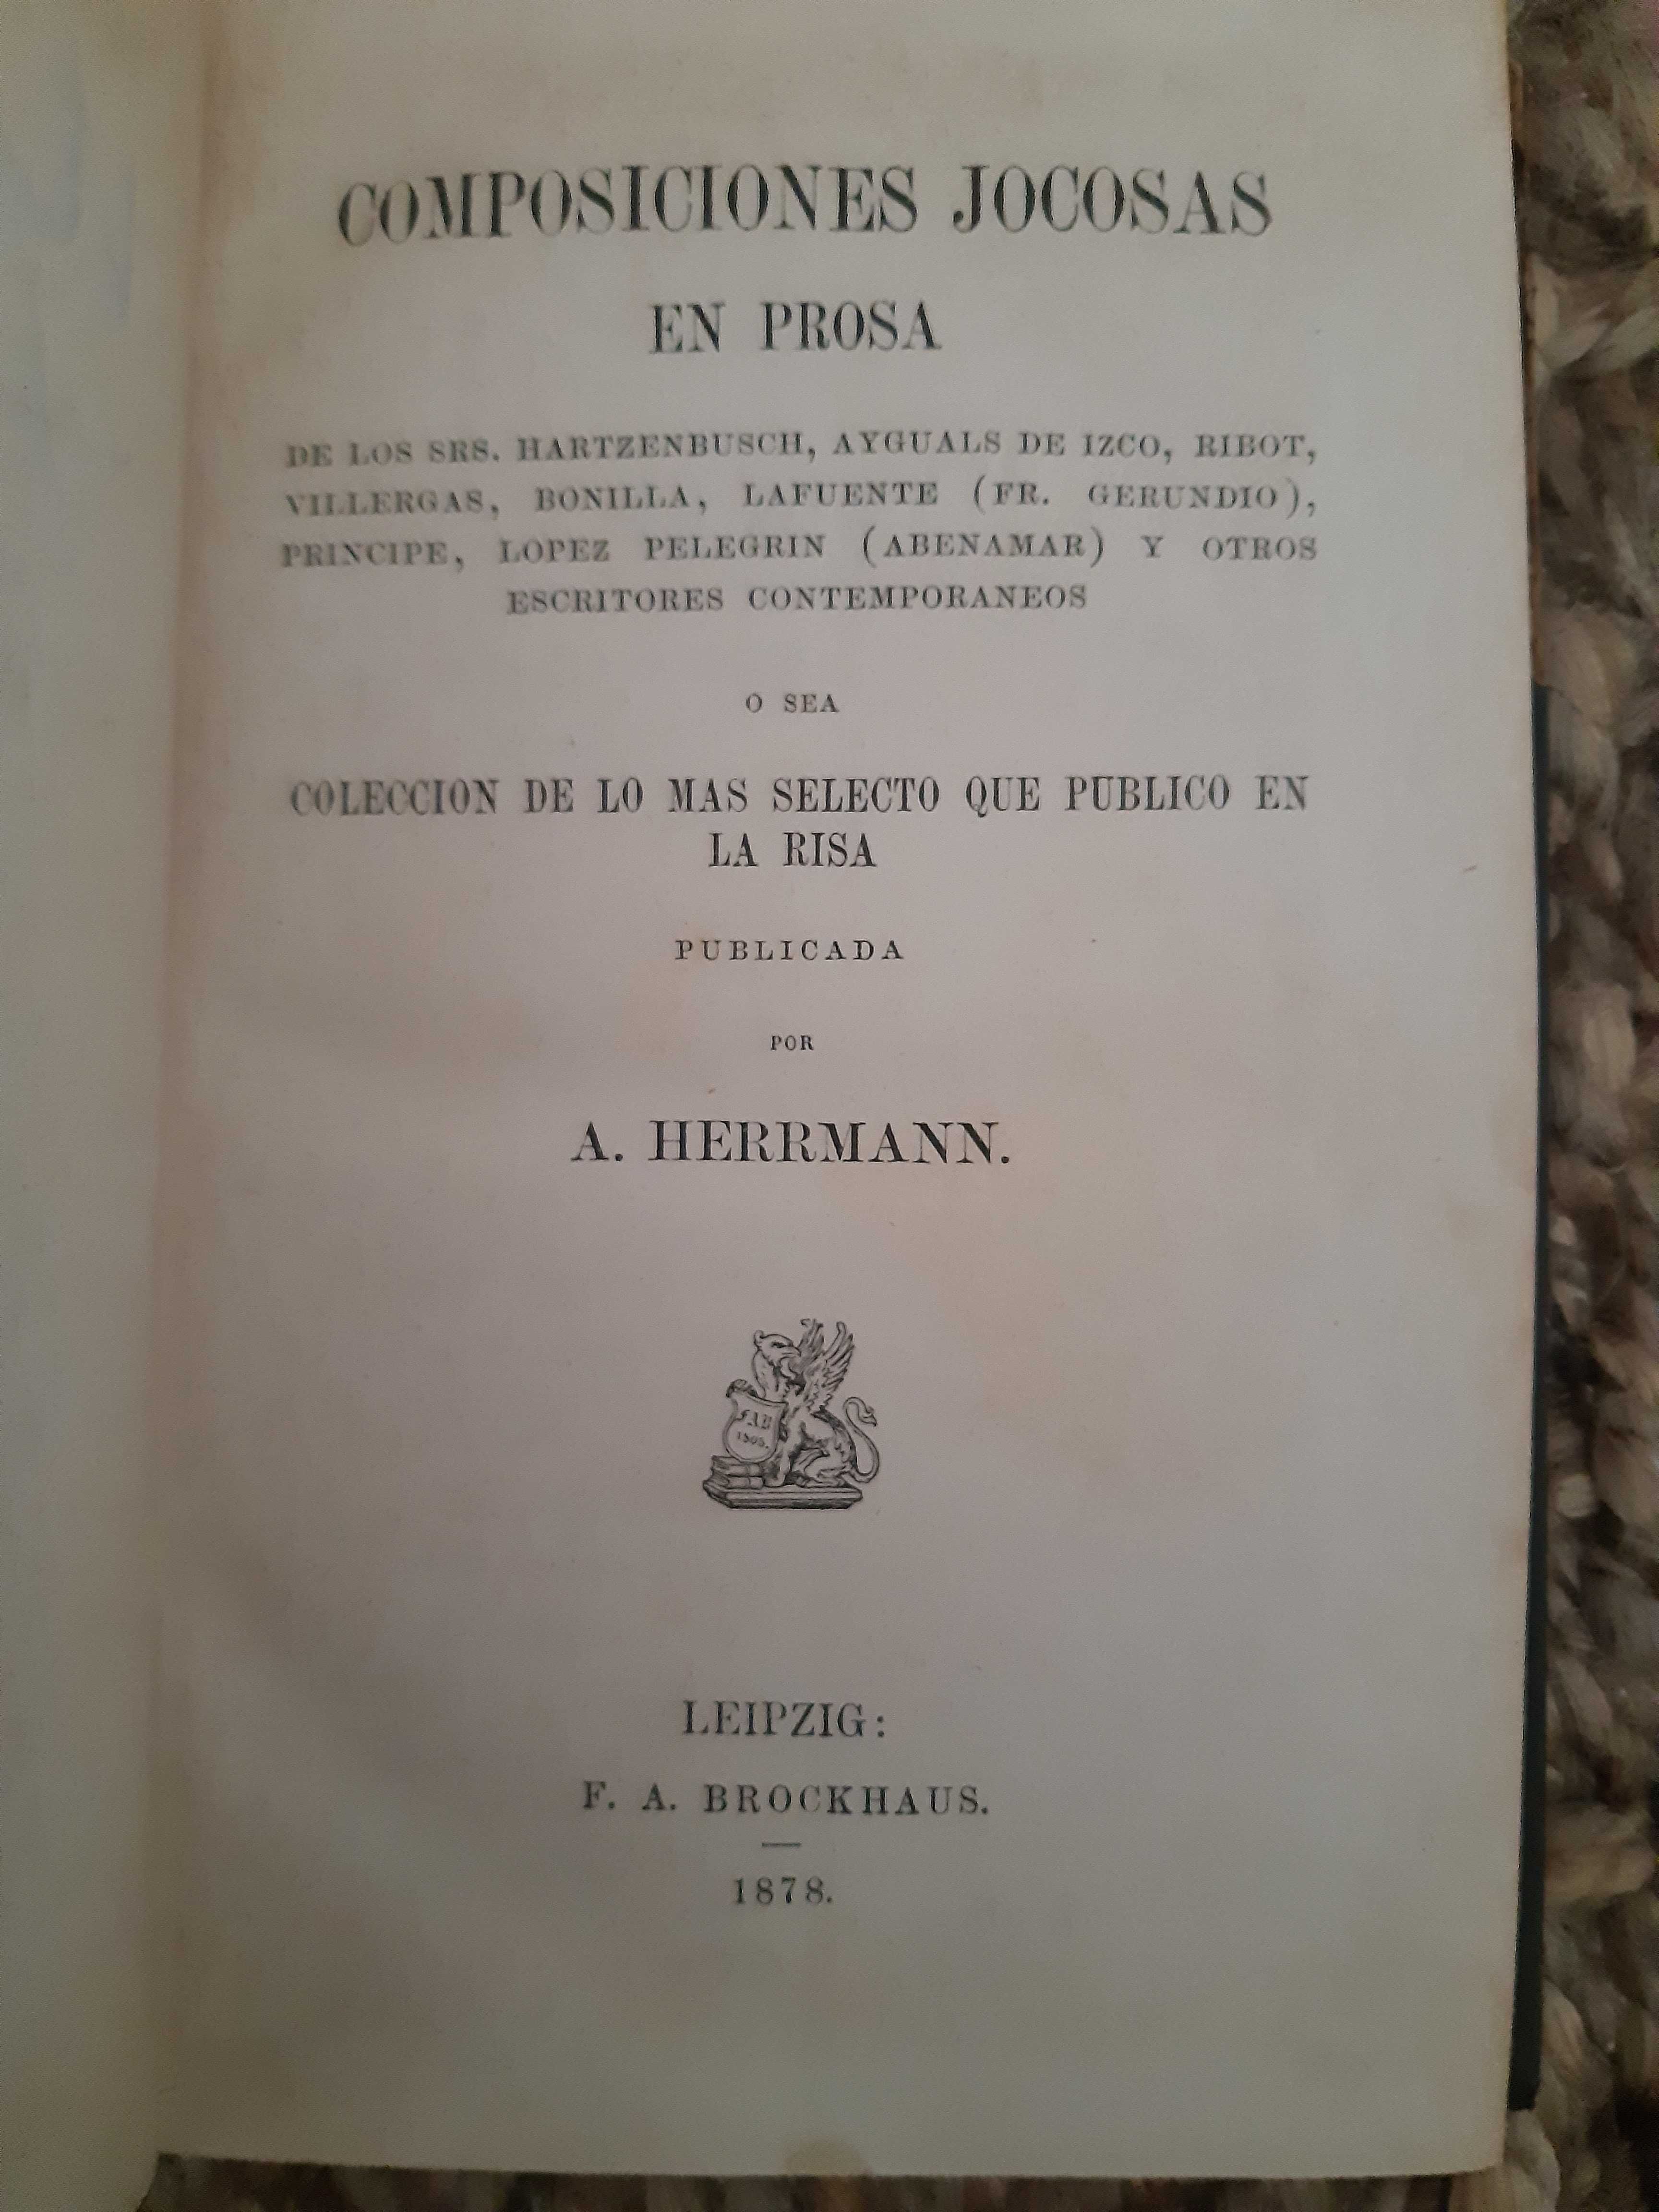 Coleccion de autores espanoles (1878 proza spaniola)